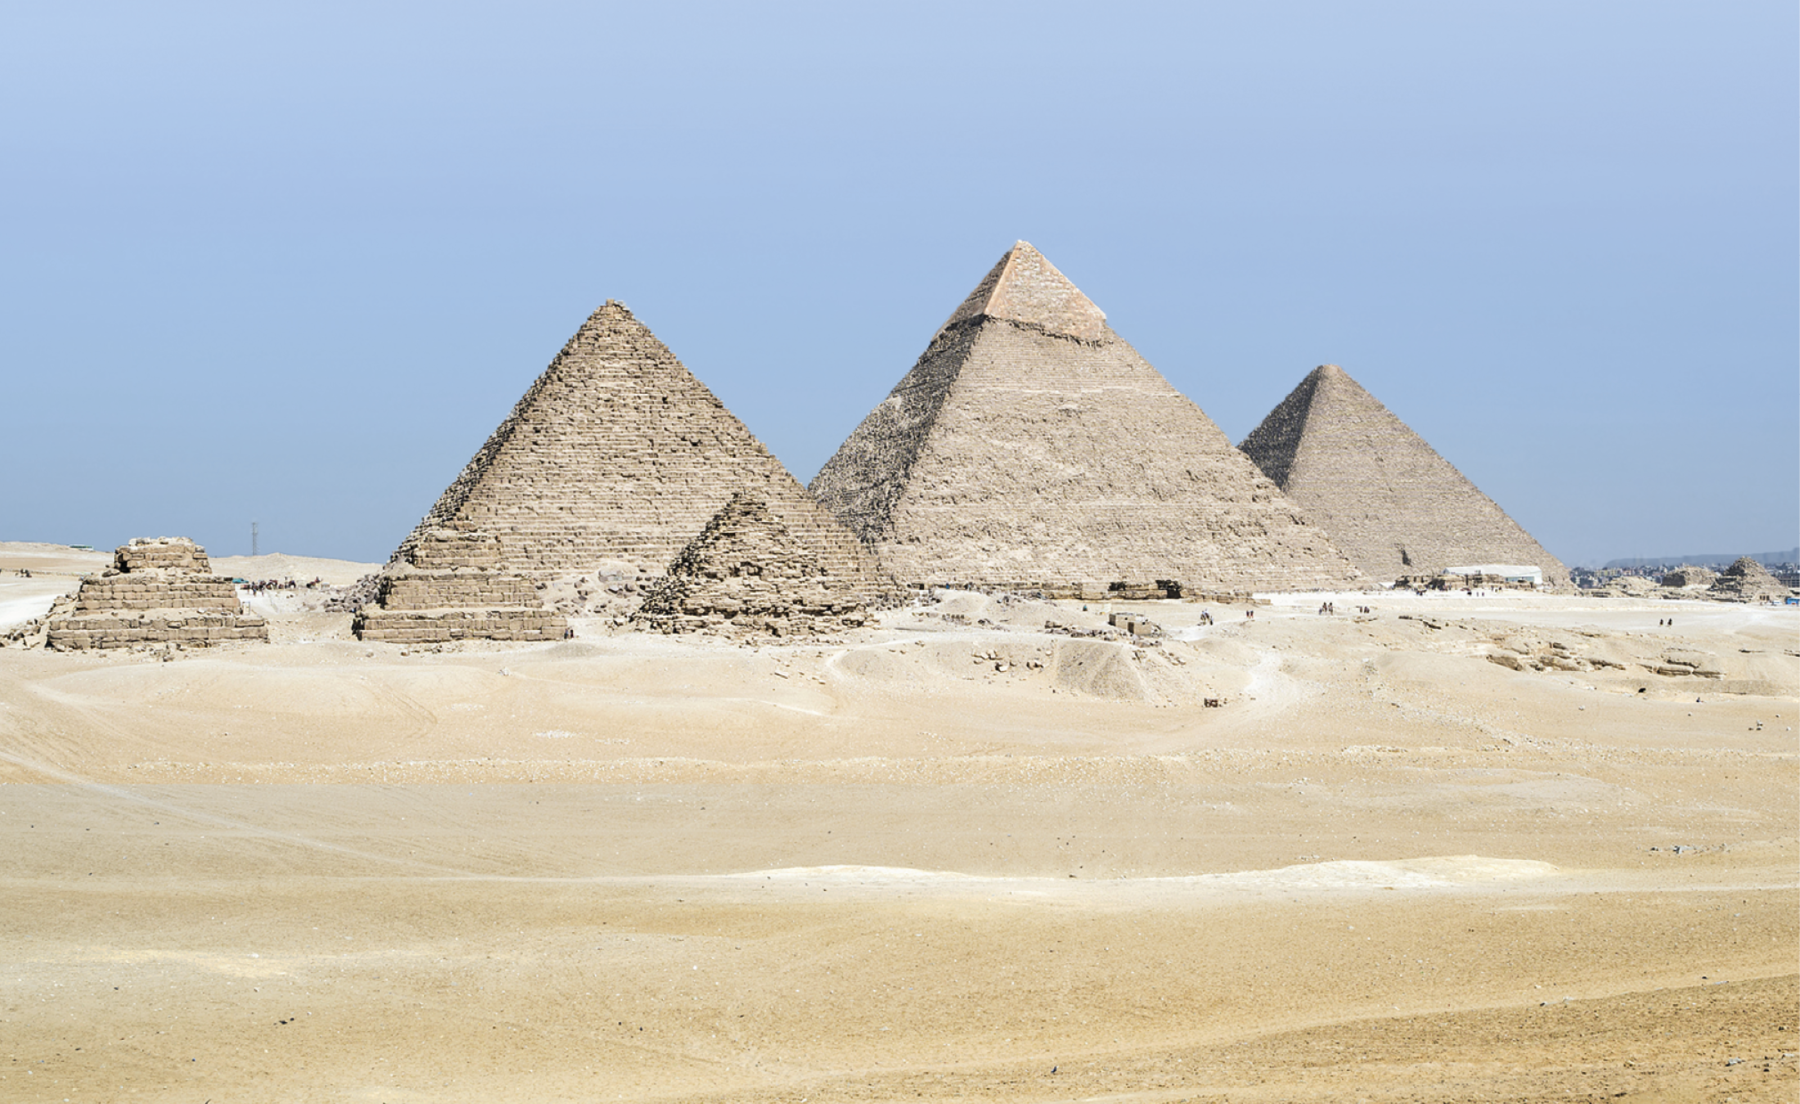 Fotografia. Vista de pirâmides egípcias em um campo aberto. Em primeiro plano, terreno arenoso e três pirâmides menores, à esquerda. Em segundo plano, três pirâmides maiores, ao centro. Ao fundo, céu azul.